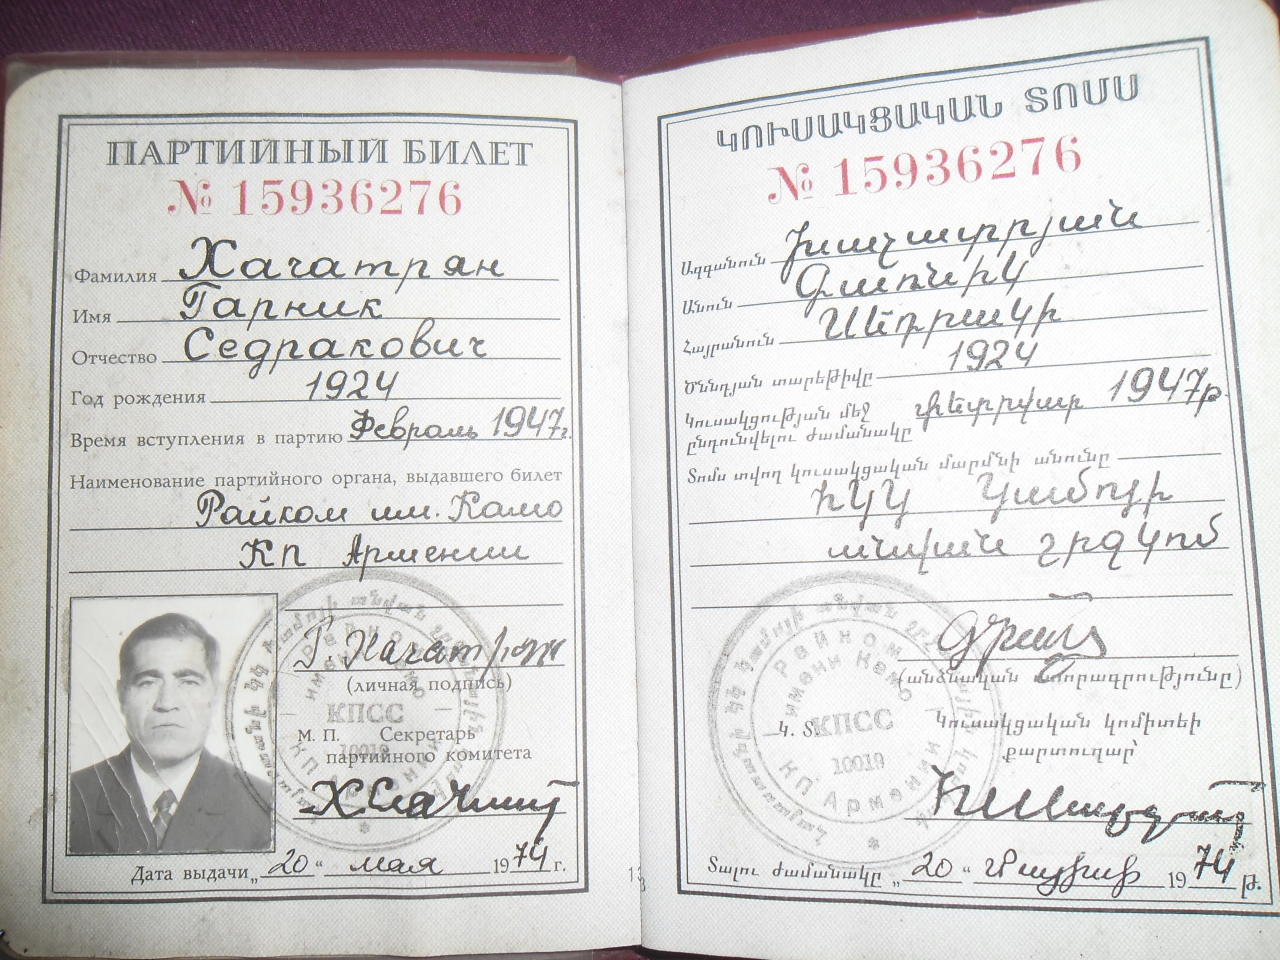 Կուսակցական տոմս՝ Գառնիկ Սեդրակի Խաչատրյանի ( Աշխատանքի վետերան, Հայրենական Մեծ պատերազմի մասնակից)